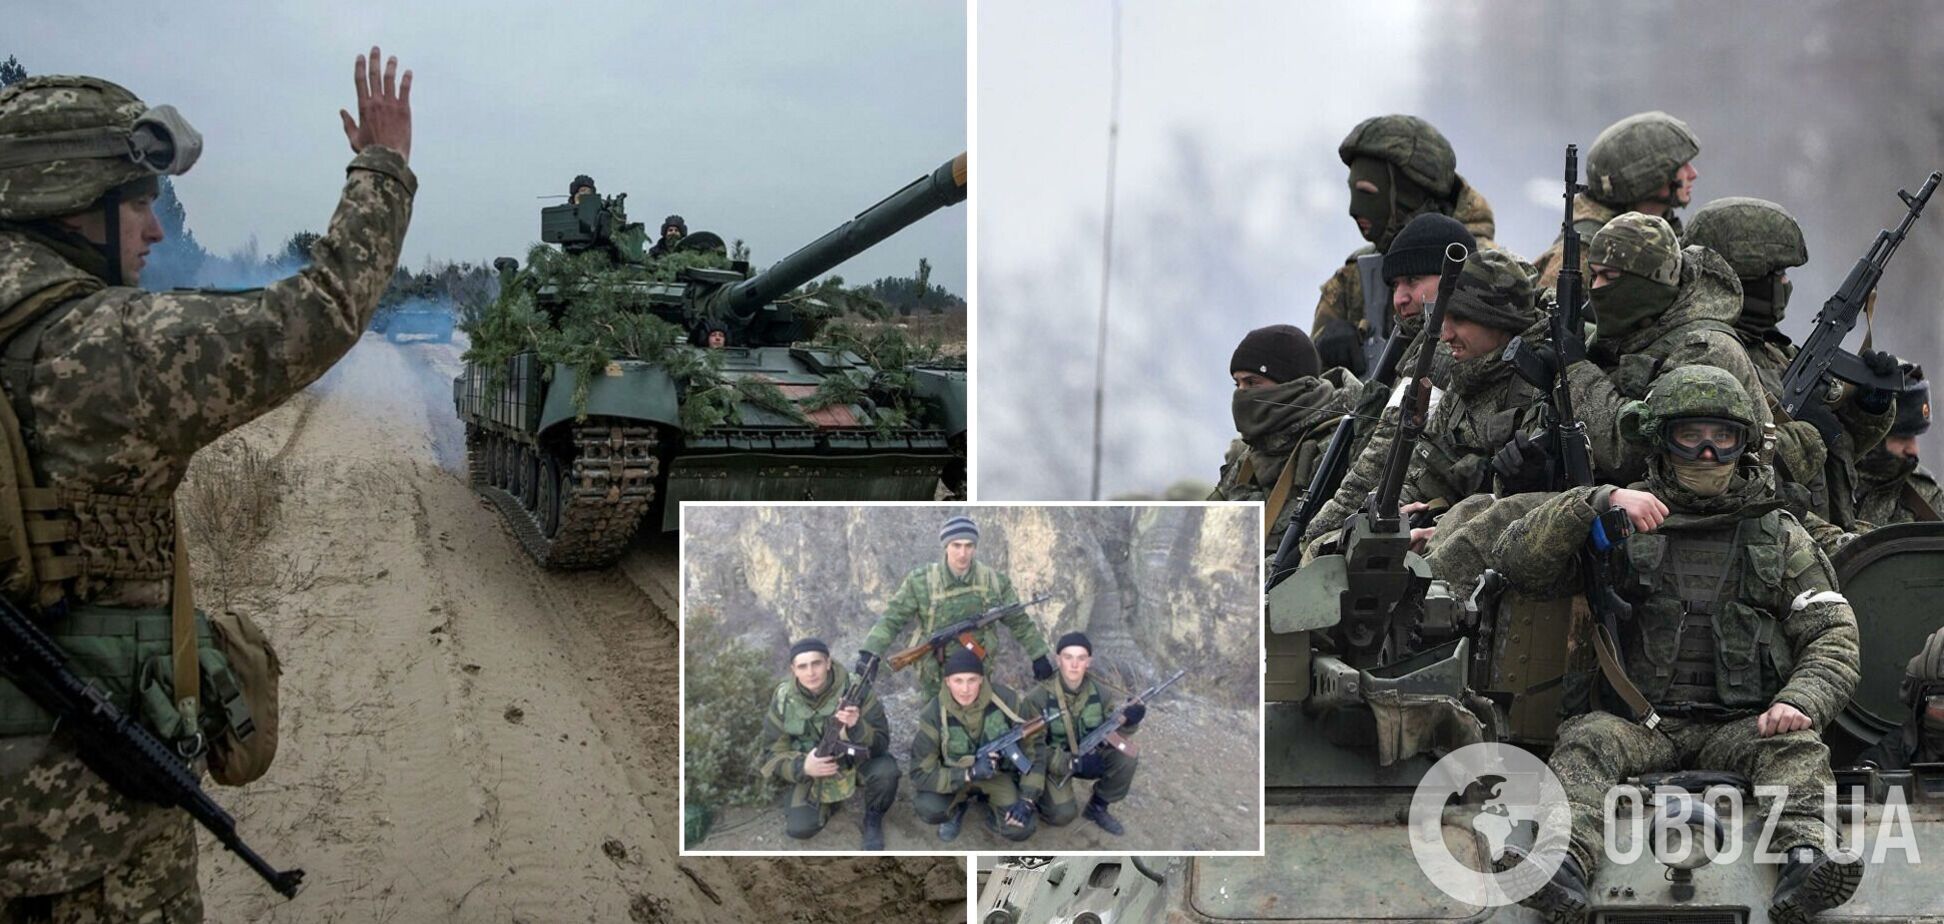 Разведка обнародовала имена солдат из Дагенстана, которые воюют против Украины